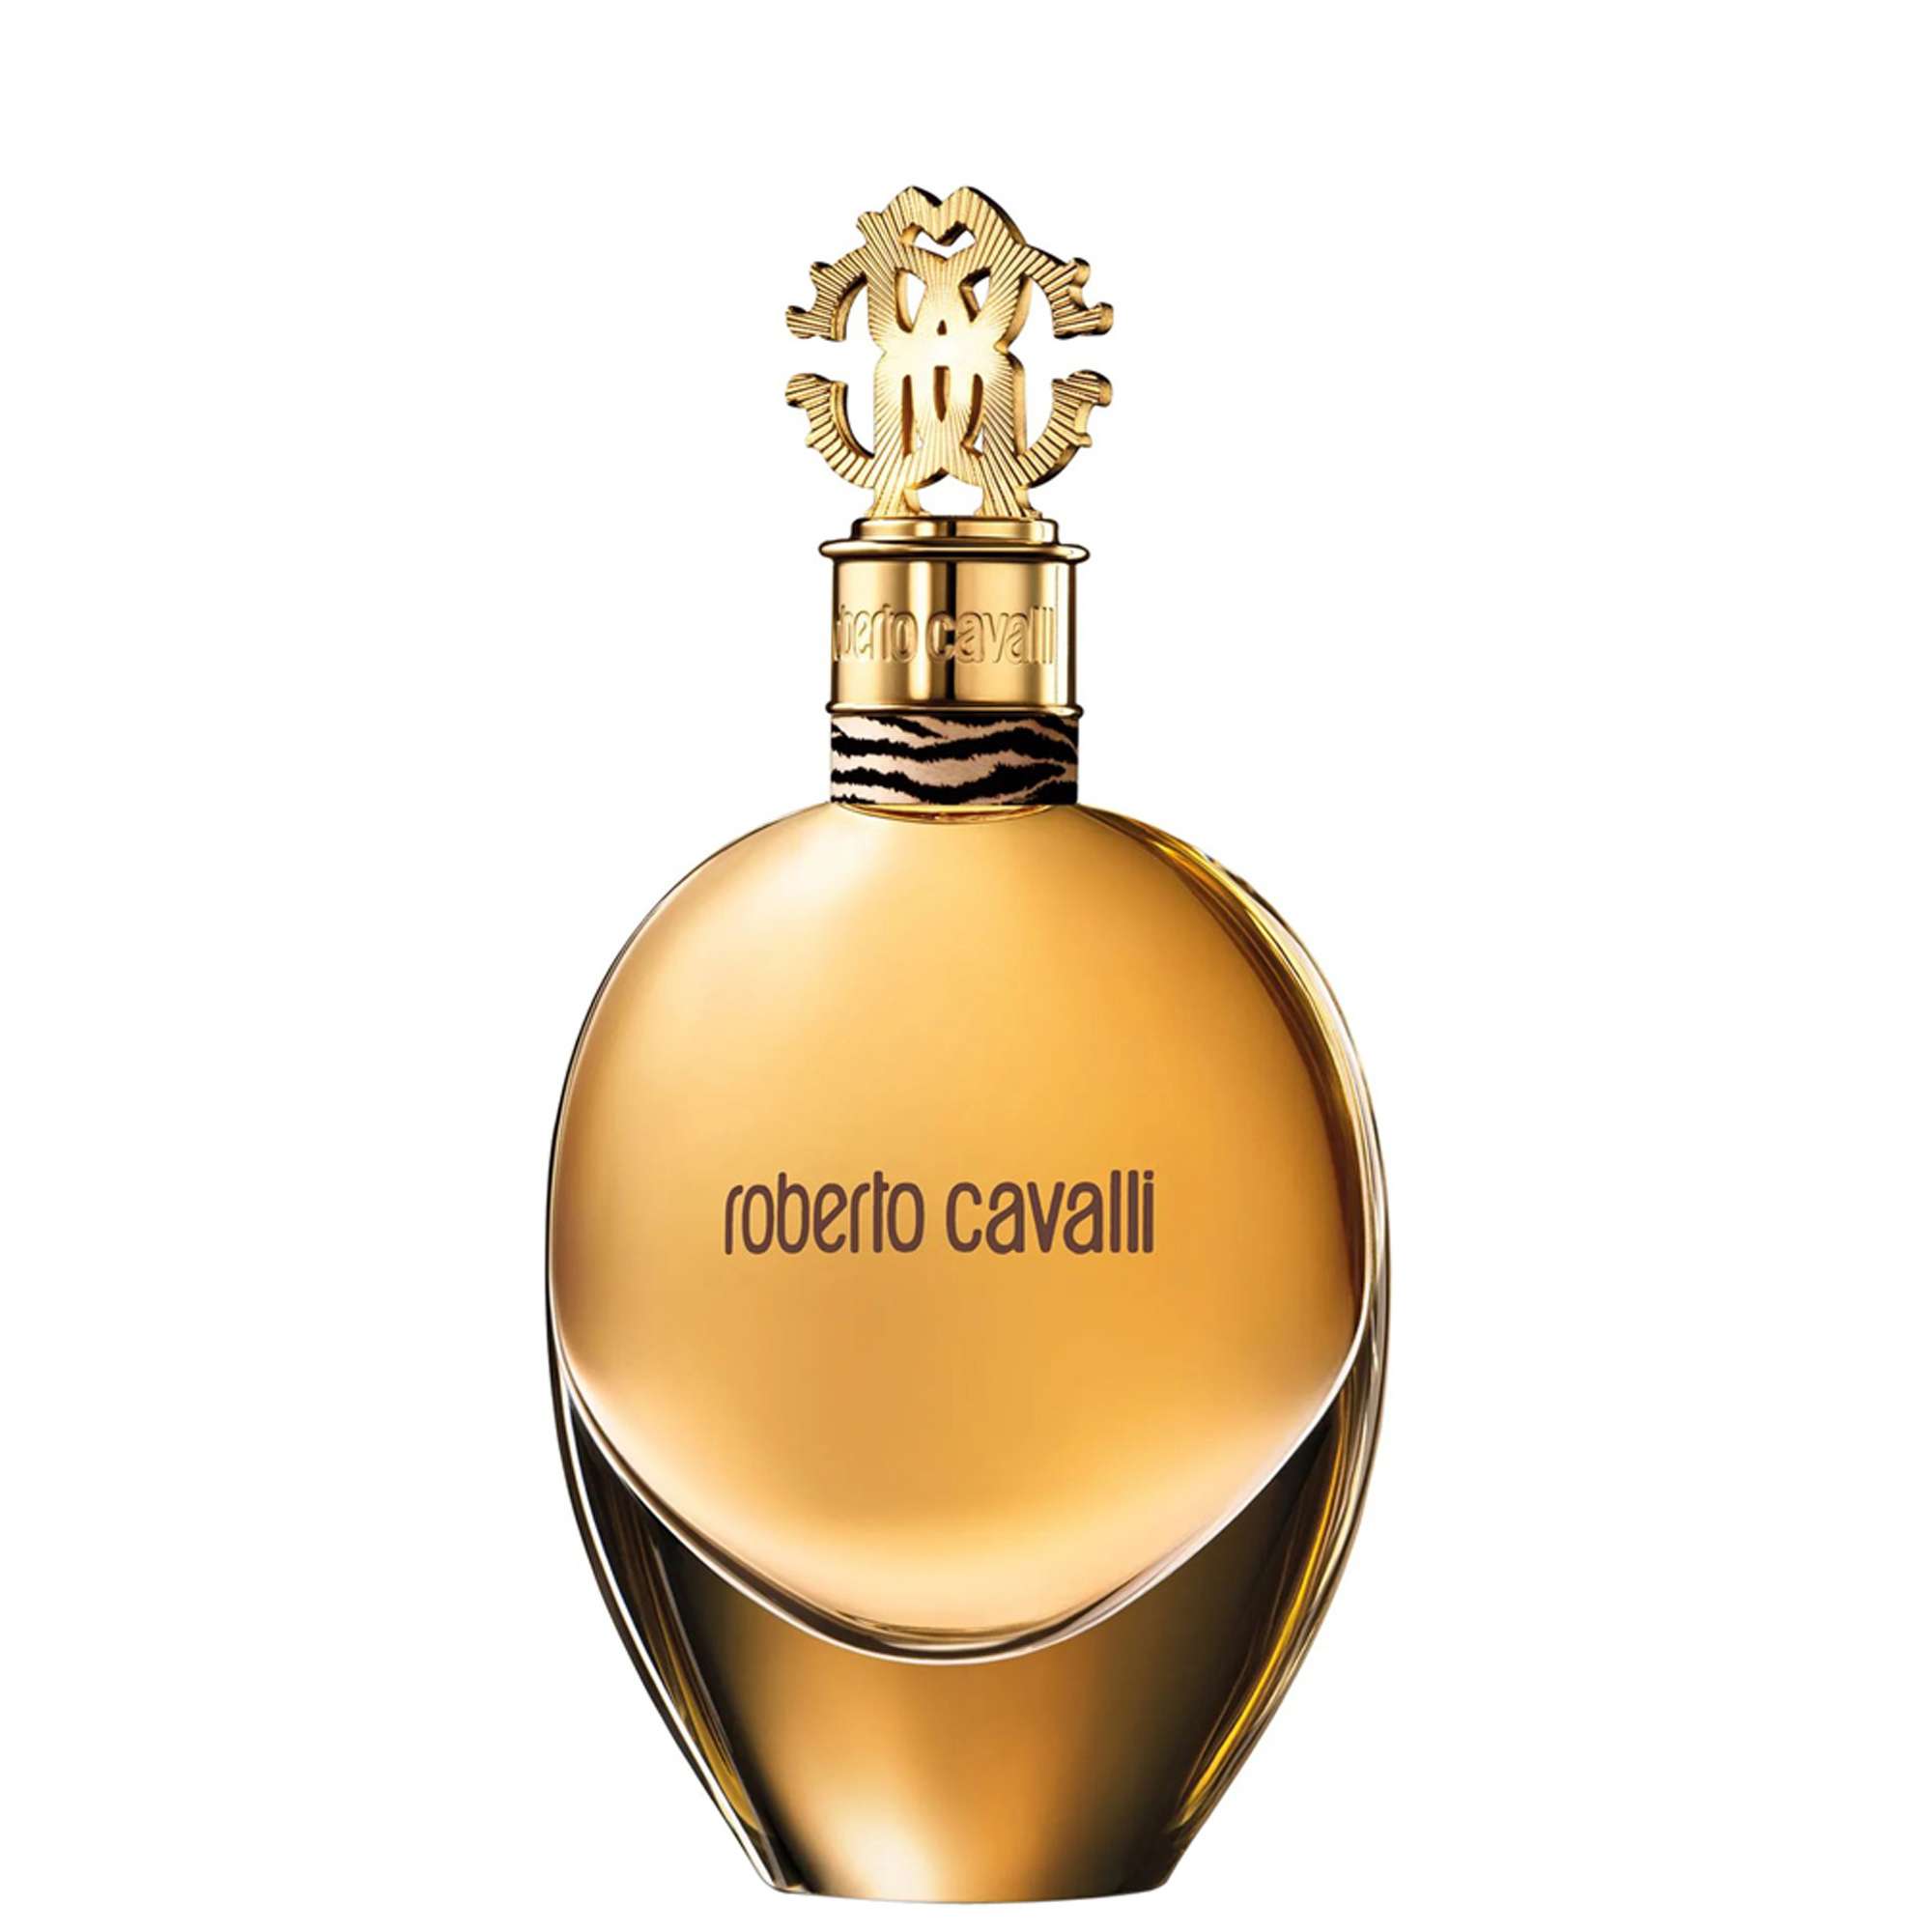 Photos - Women's Fragrance Roberto Cavalli Eau de Parfum Spray 50ml 